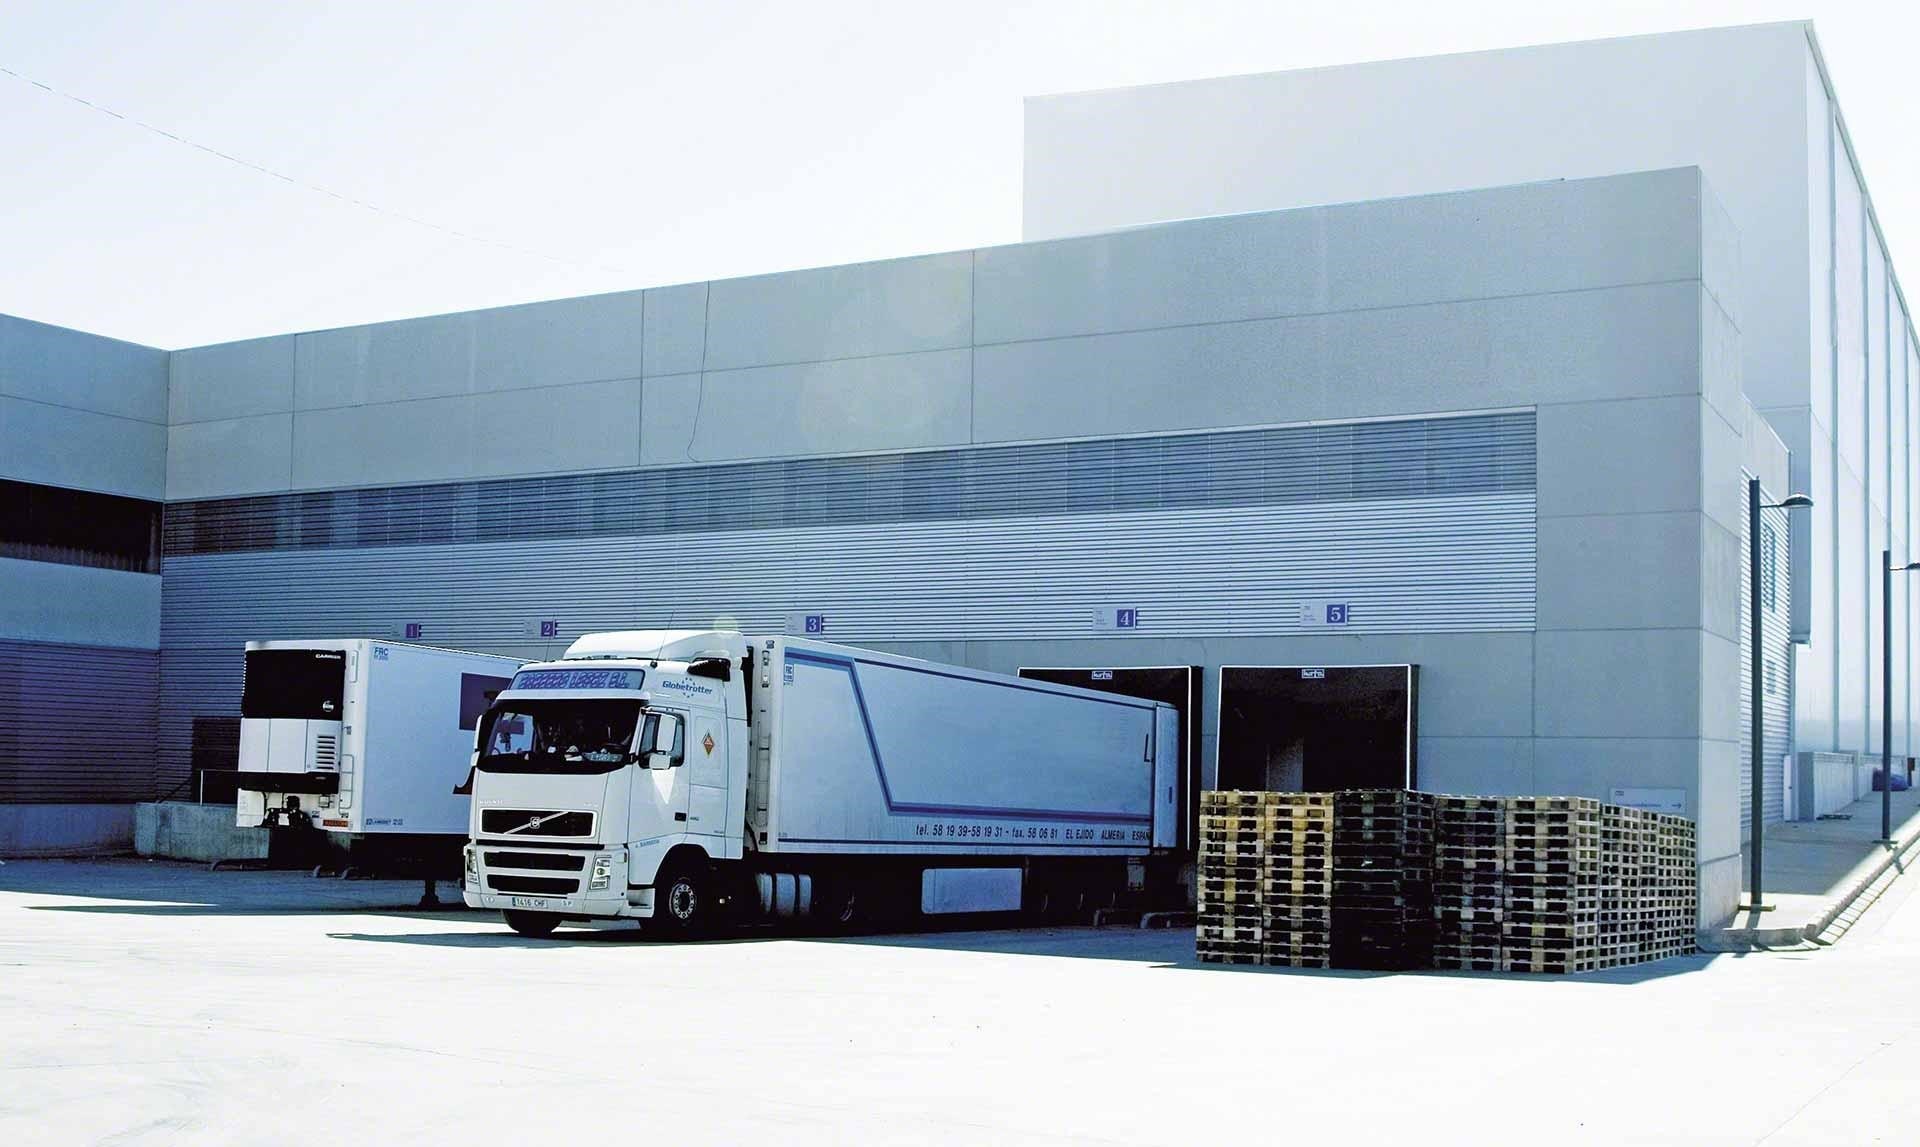 Camiones de mercancías descargan en el almacén como parte de las operaciones de cross-docking